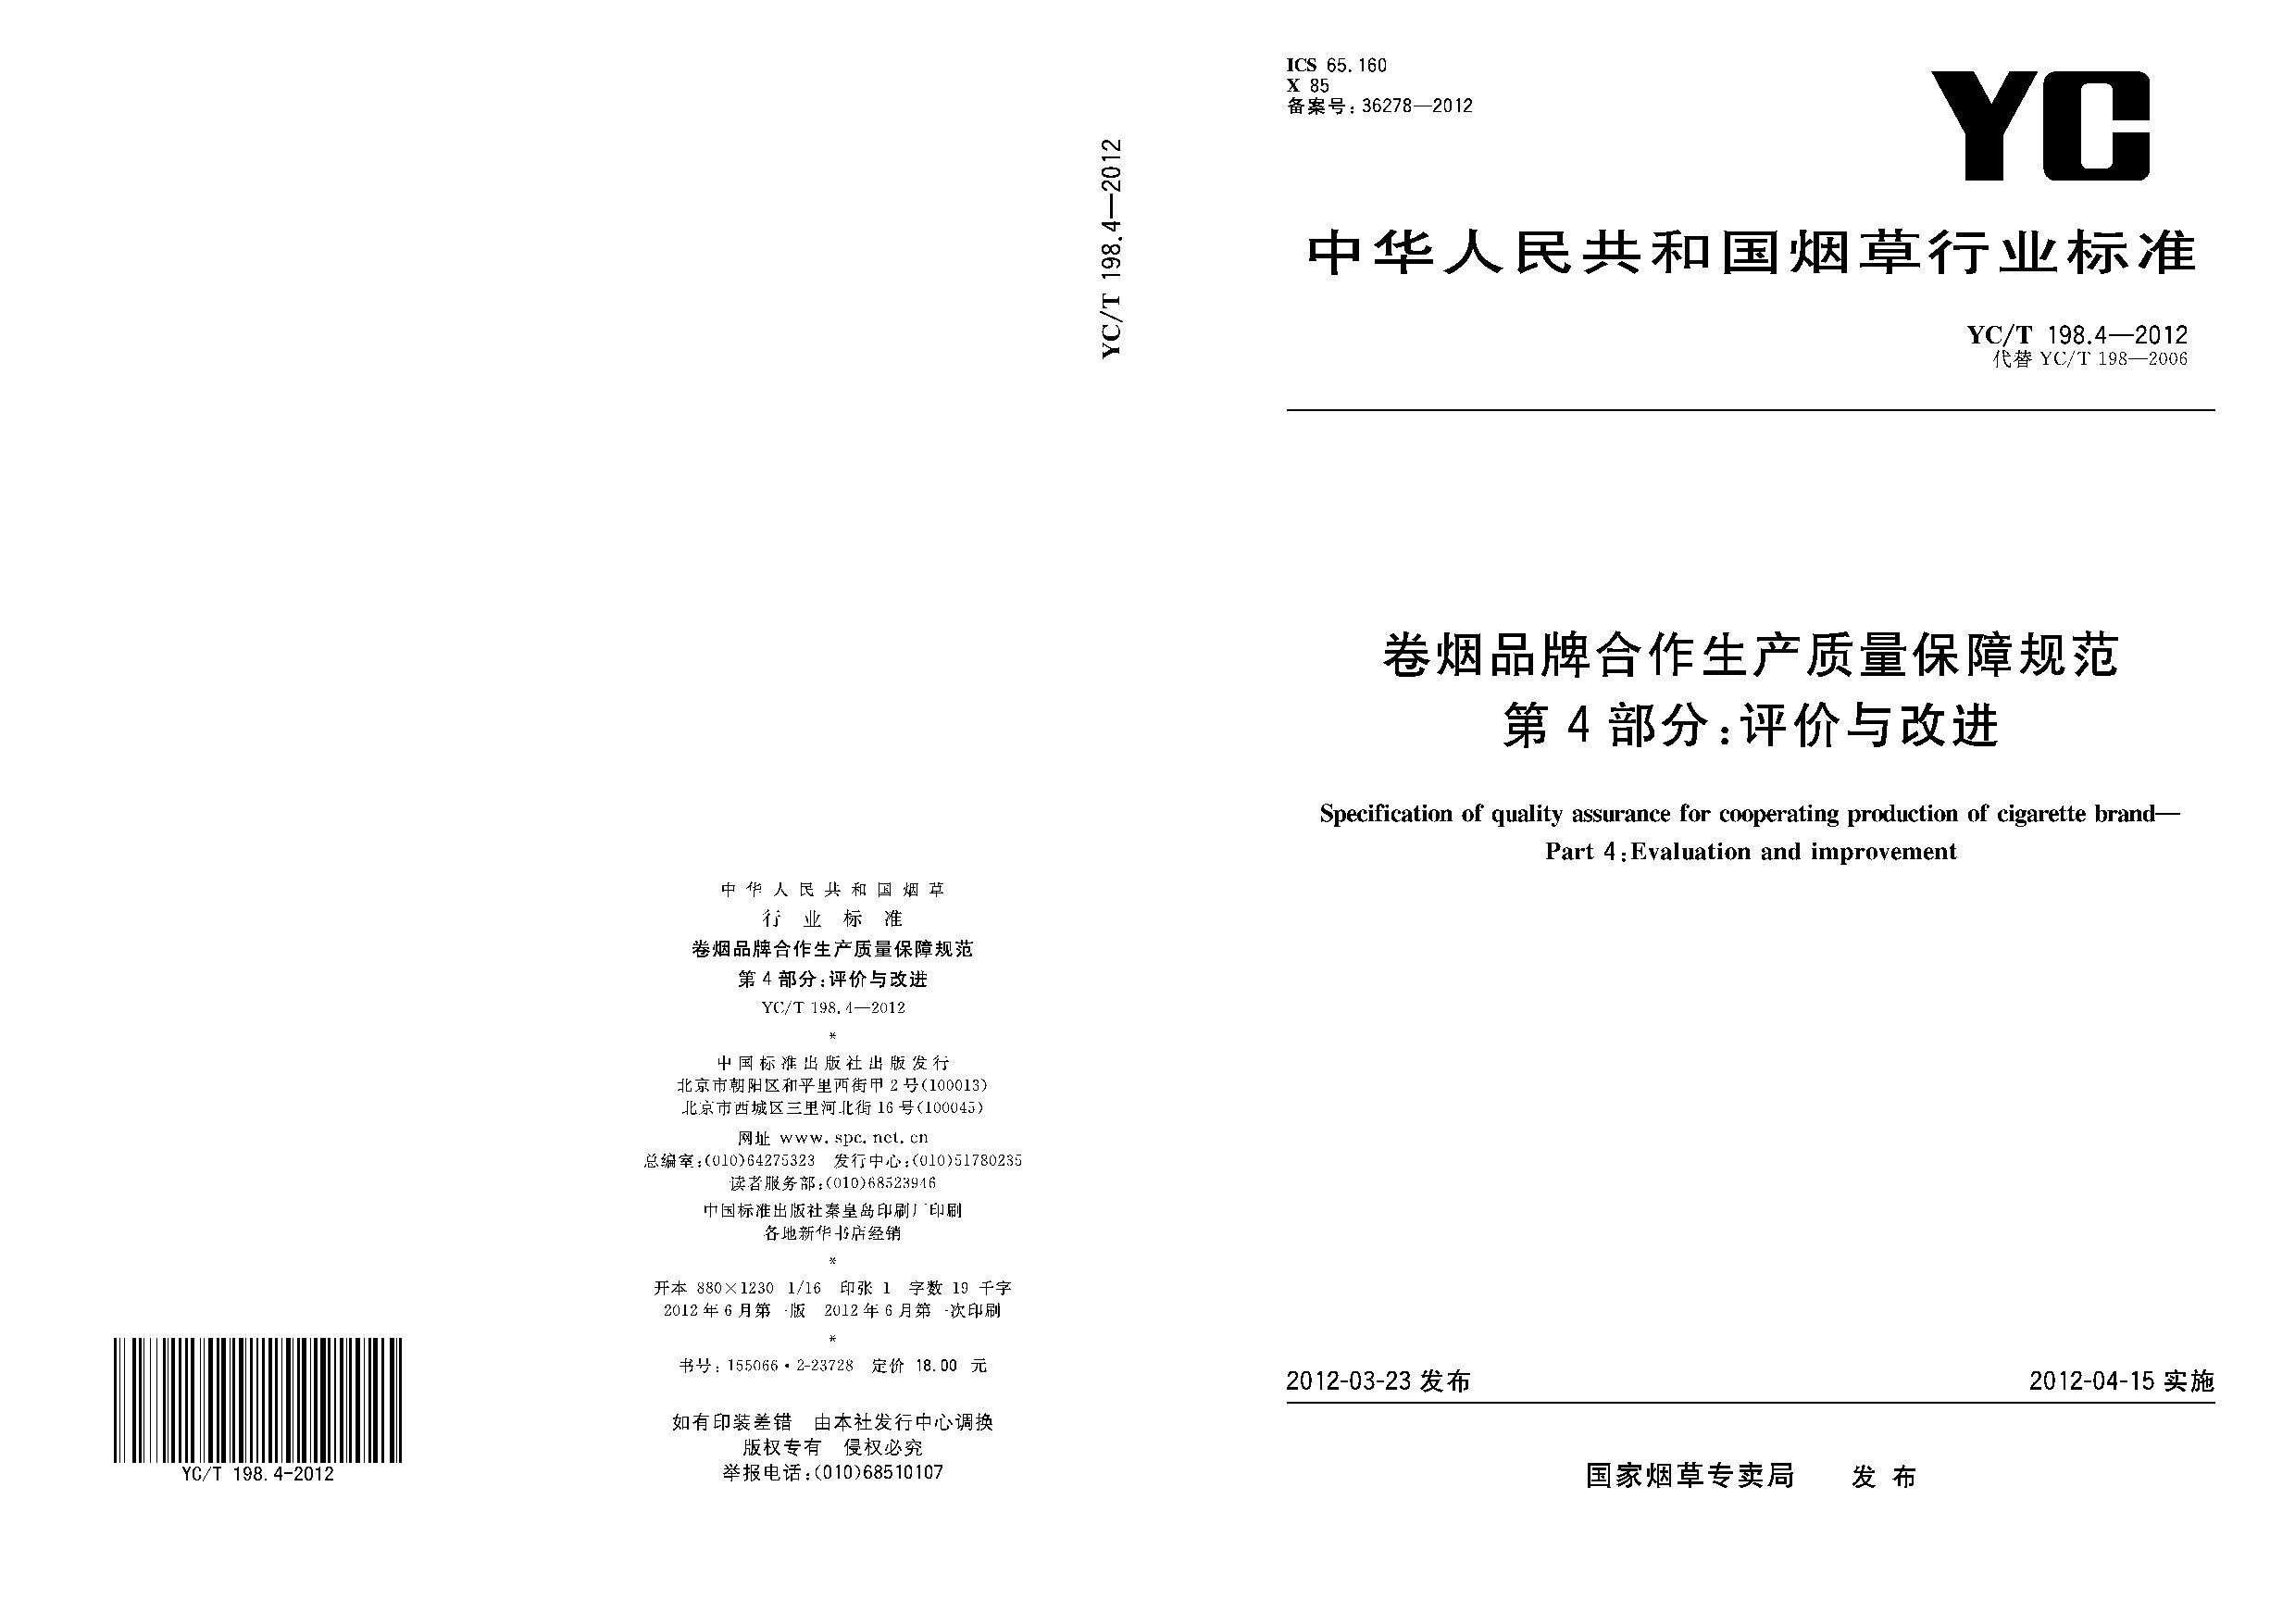 YC/T 198.4-2012封面图